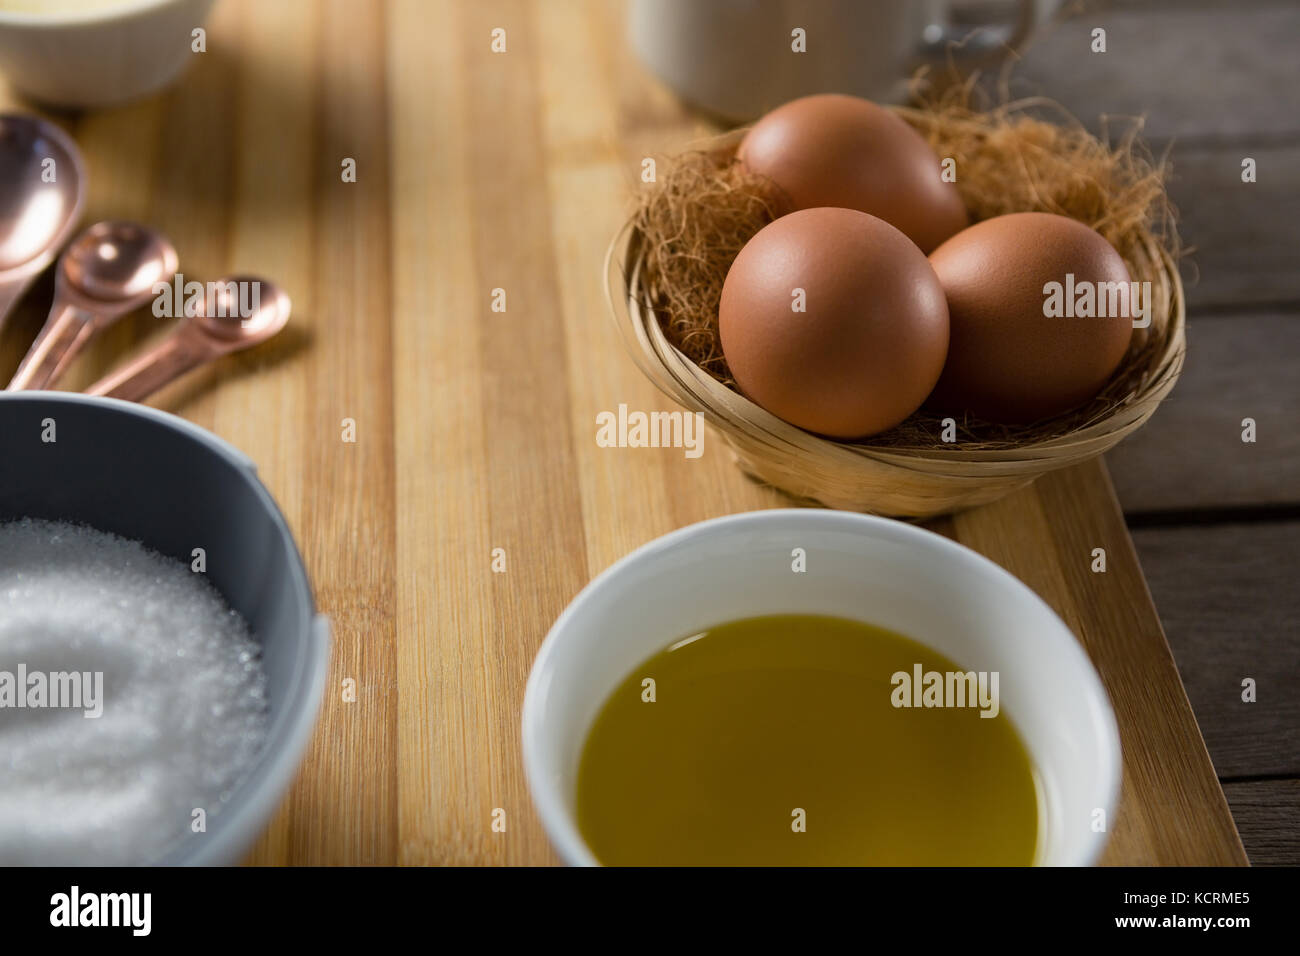 Close-up di uova nel cesto di vimini con olio e zucchero sul pannello di legno Foto Stock